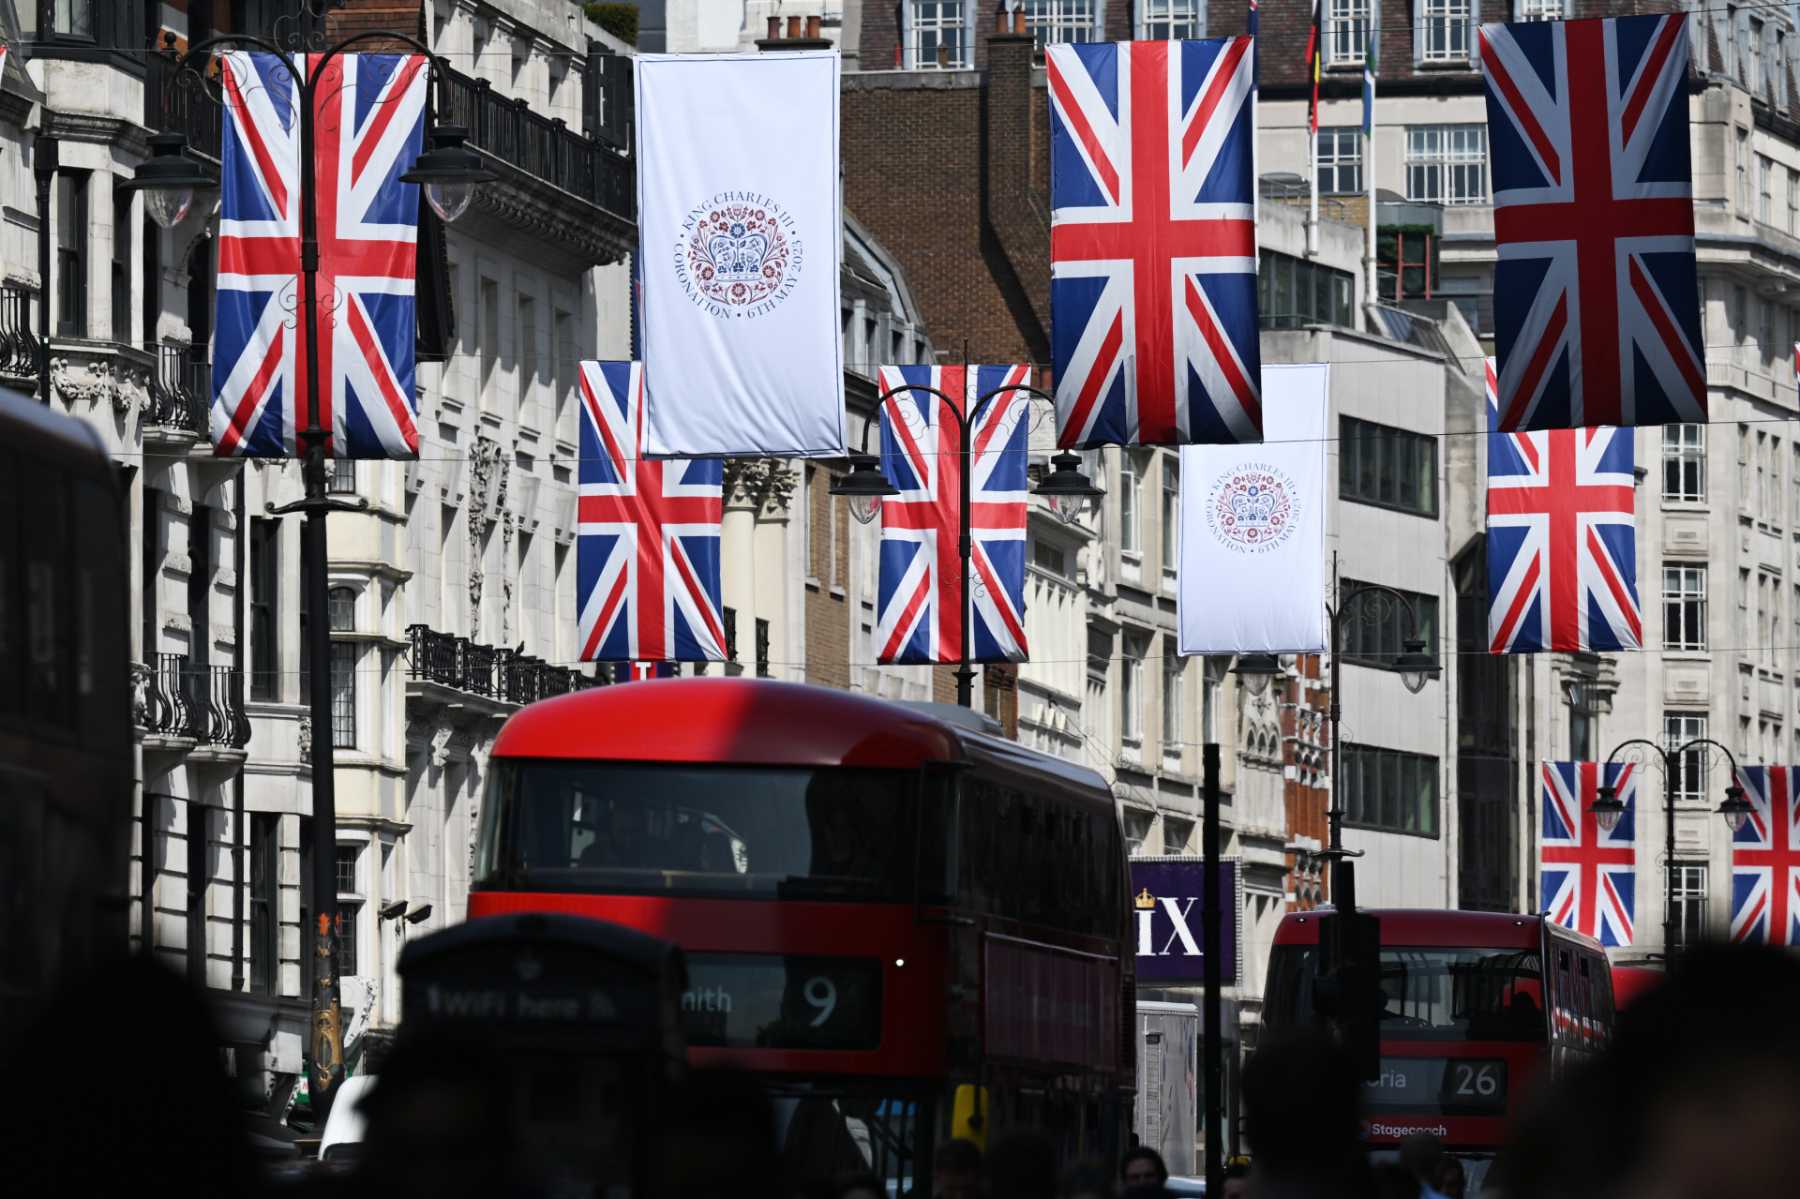 Banderas conmemorativas en Londres por la coronación de Carlos III / Gtres